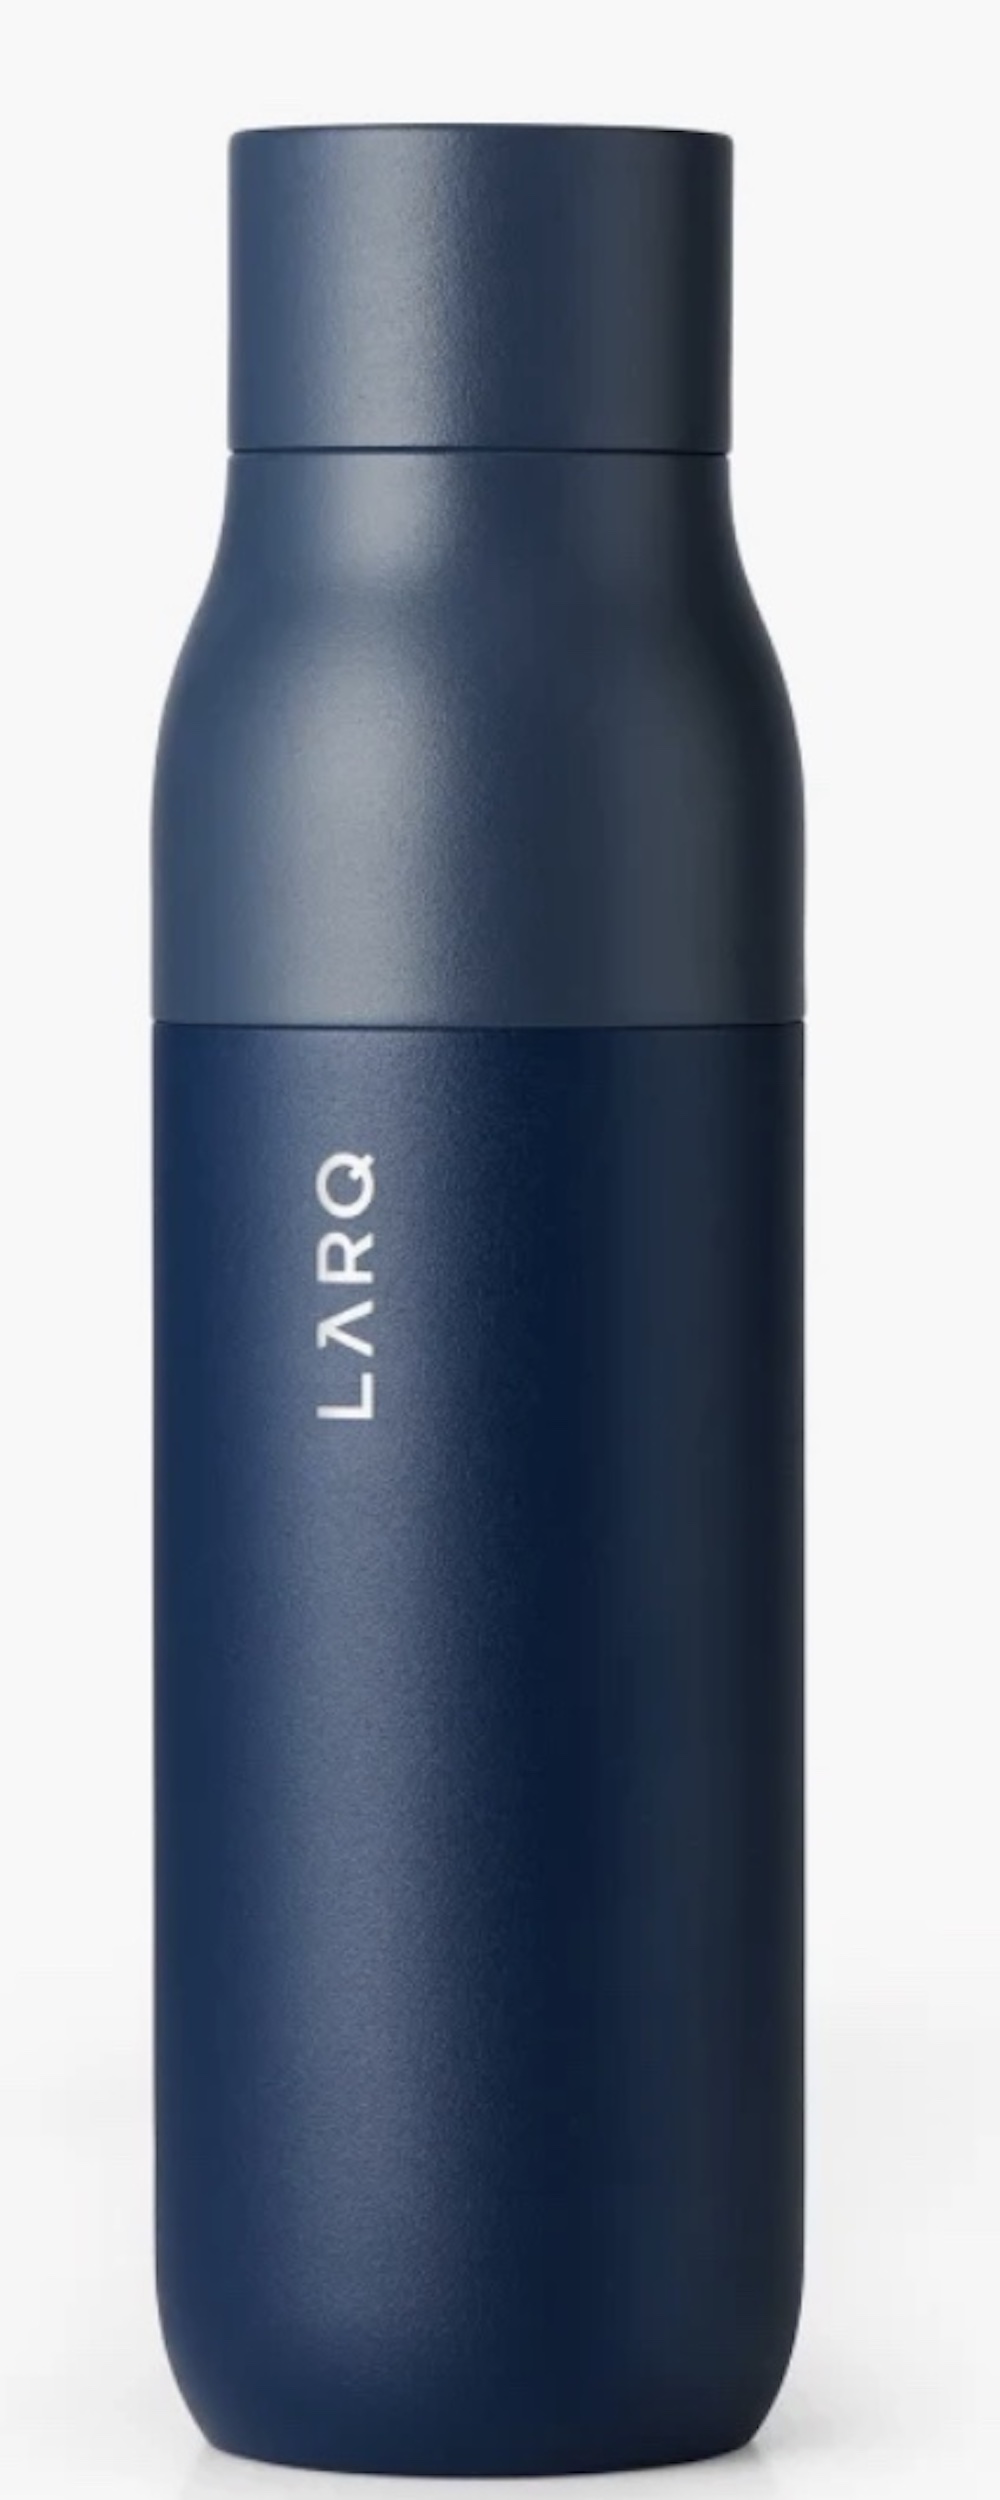 Larq water bottle